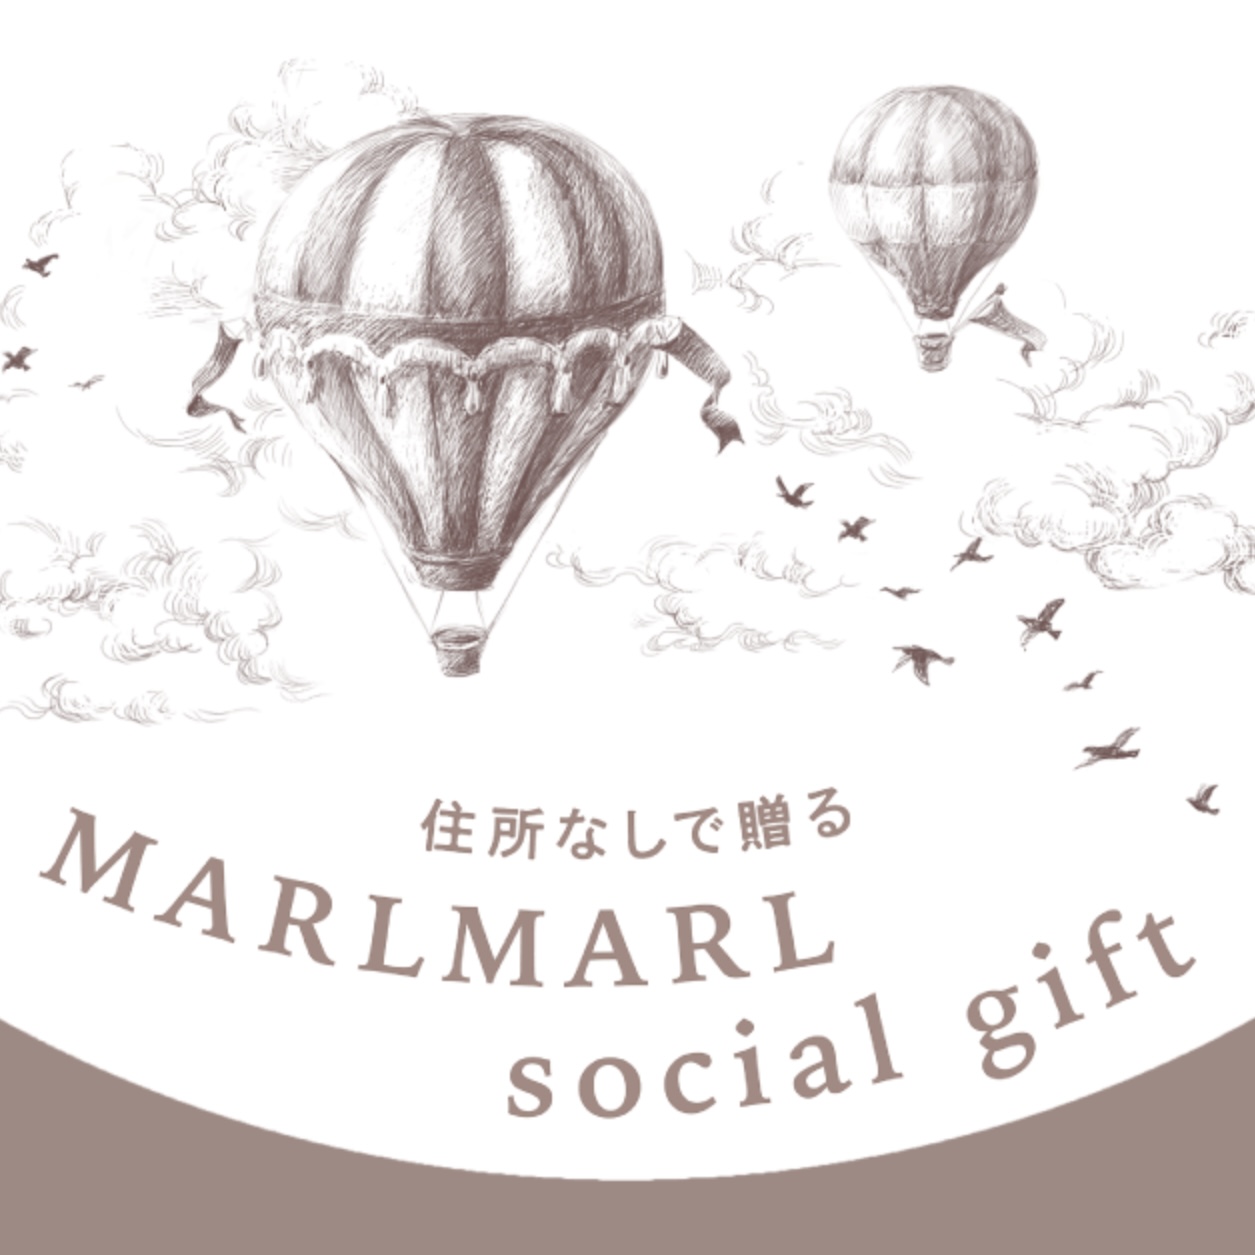 【新しい贈り方が登場】住所や本名を知らない相手にもギフトできる！MARLMARL social gift 12.6(MON.)